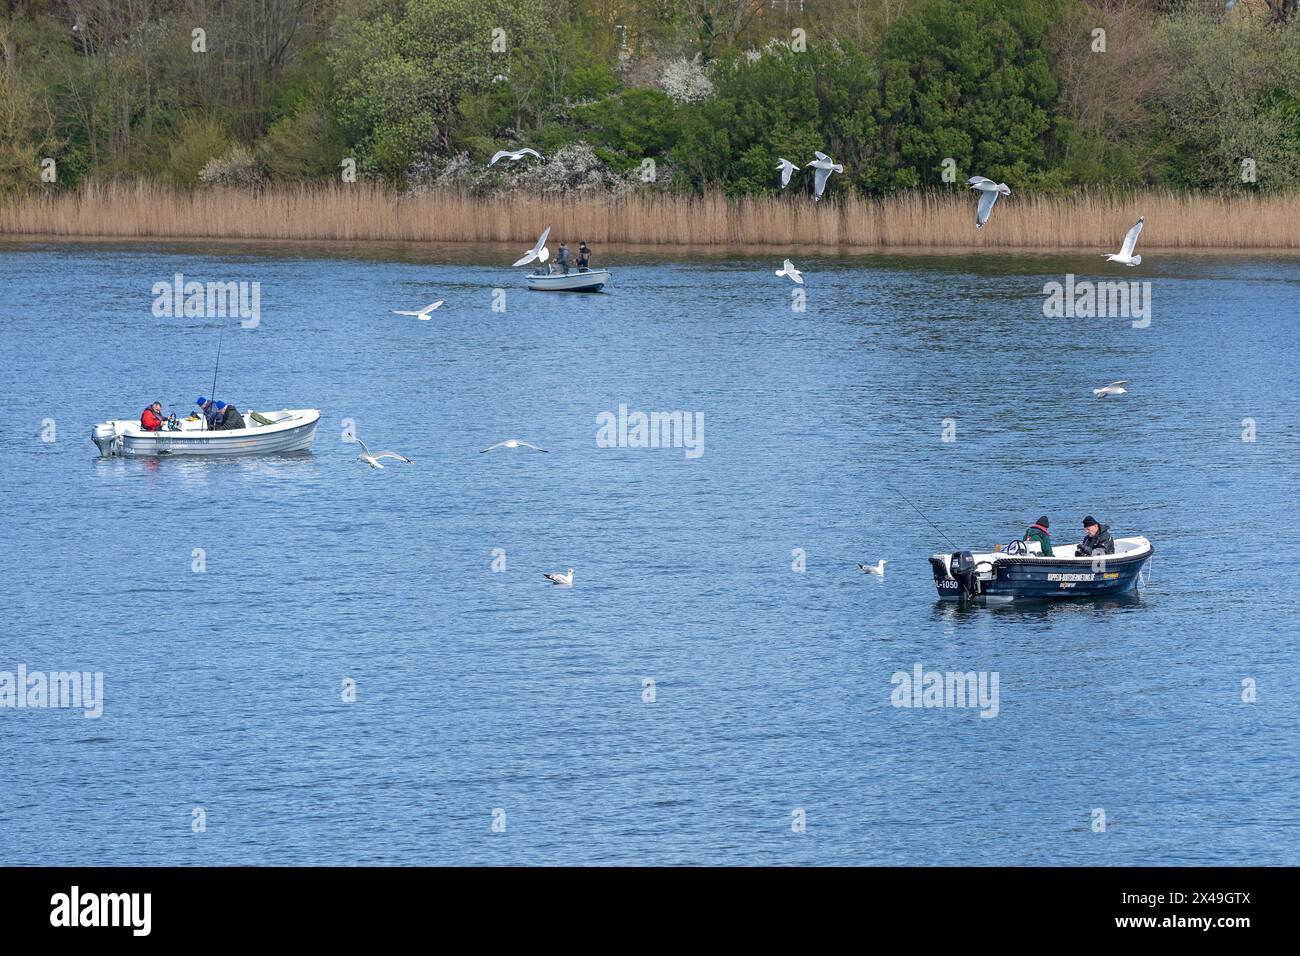 Mouettes, bateaux, gens, pêche au hareng près de Kappeln, Schlei, Schleswig-Holstein, Allemagne Banque D'Images